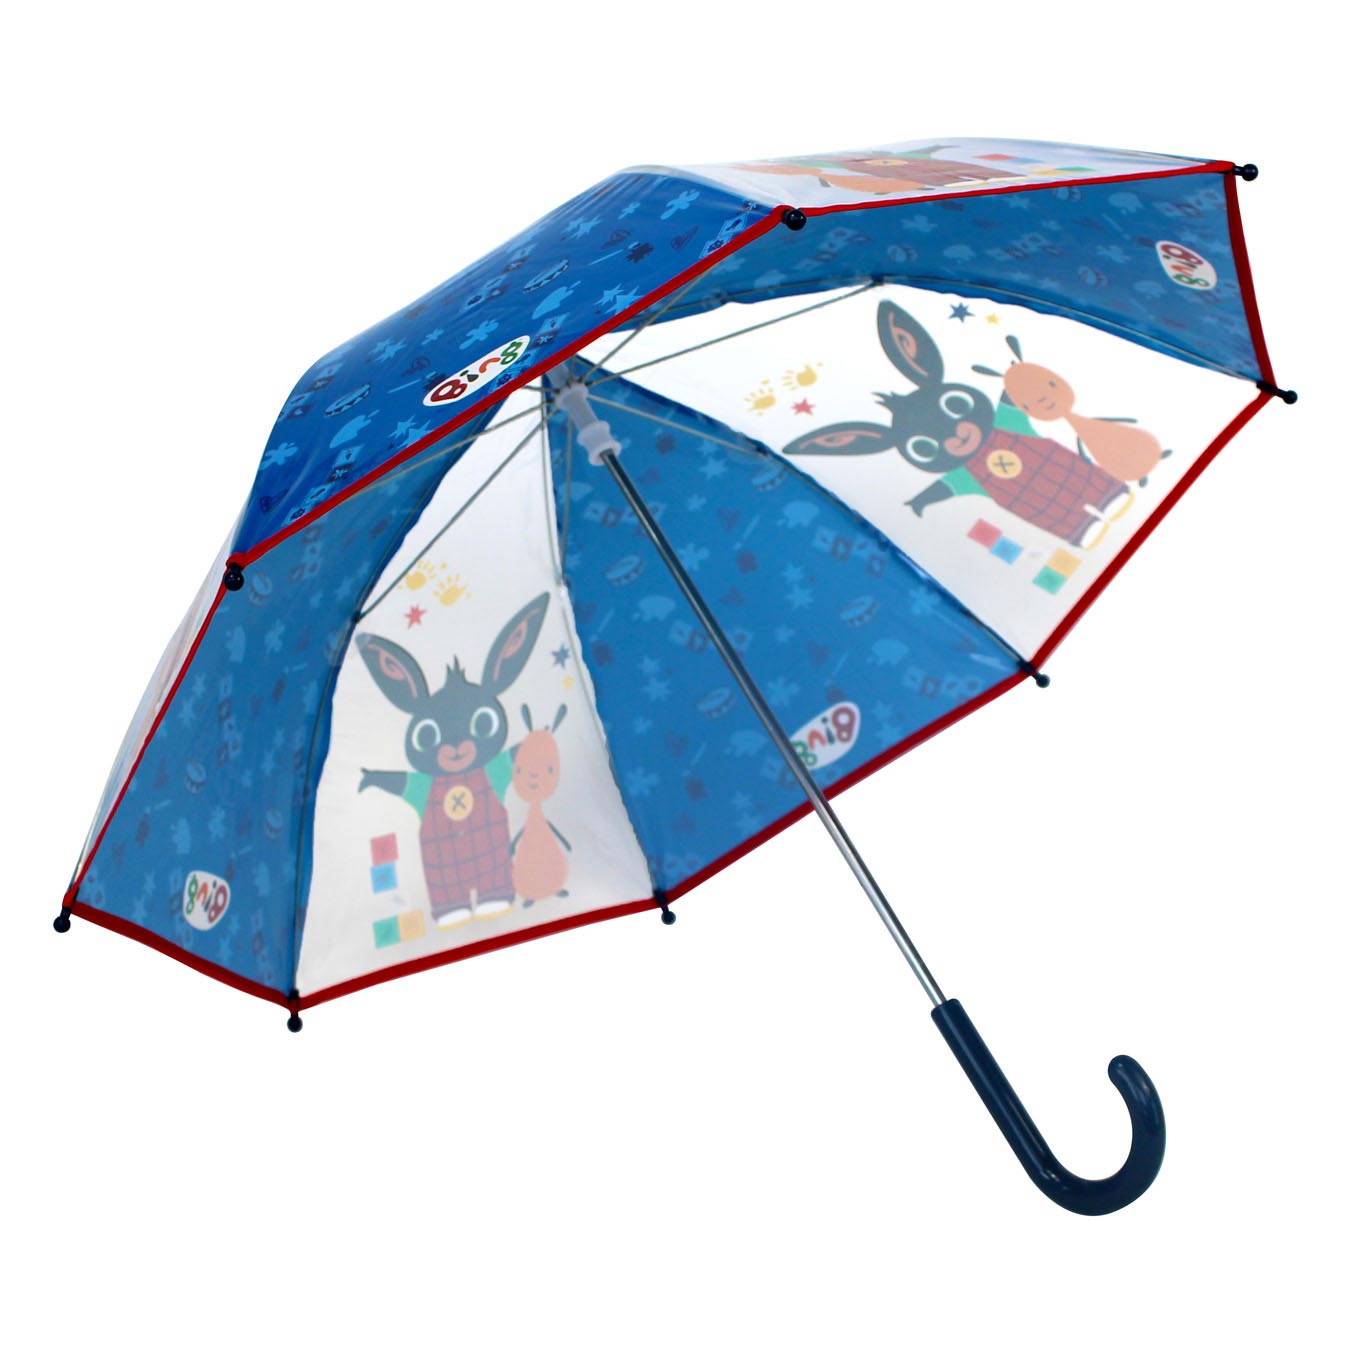 Regenschirm Bing Regentage